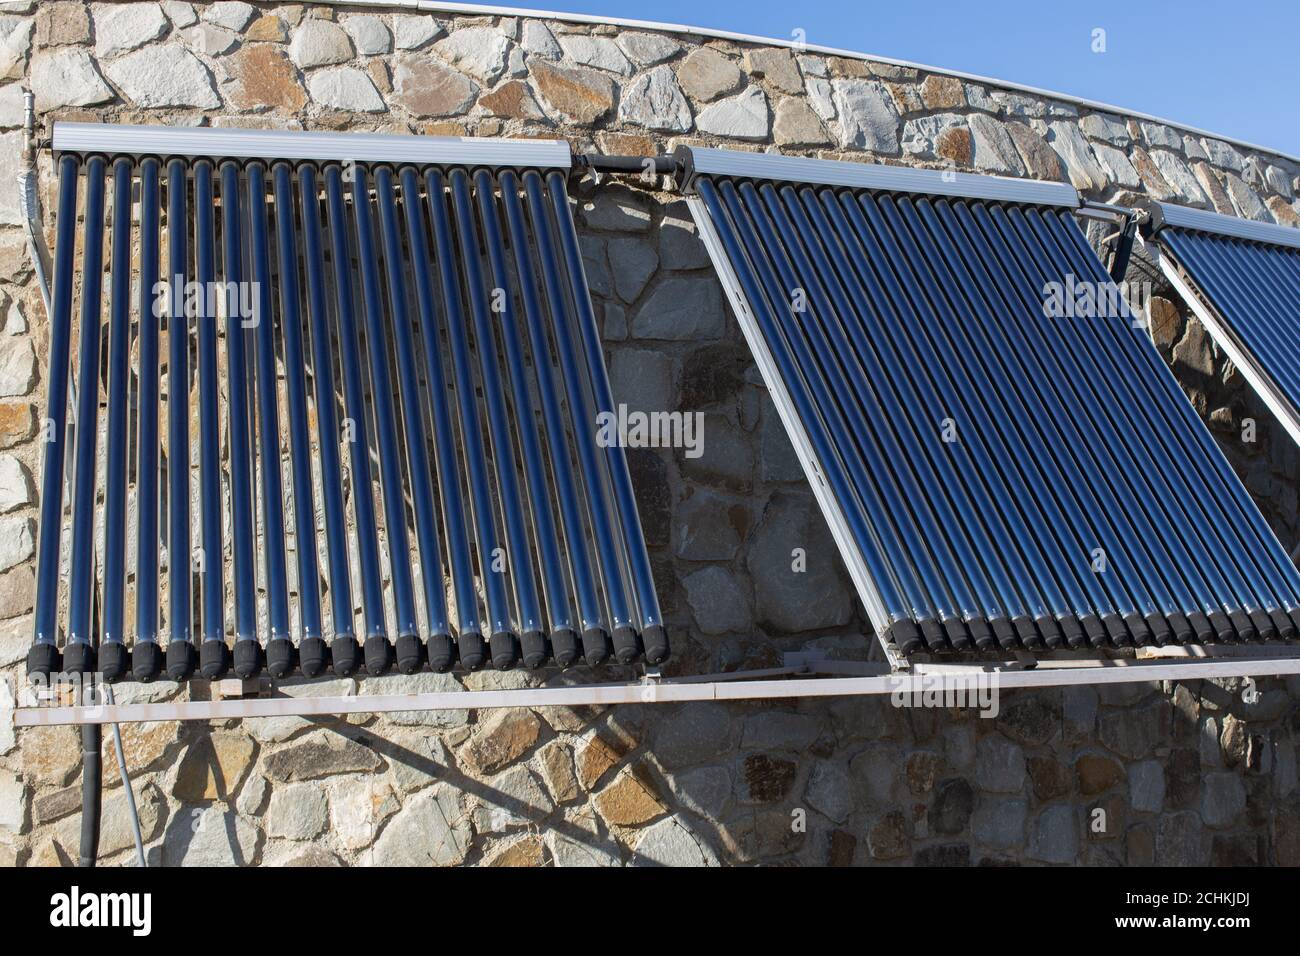 Solar-Wasser-Heizung an der Wand oder Dach des Hauses installiert. 3 Platten  aus Glas koaxiale Rohre mit Wasser, um Wärme zu sammeln. Seitenansicht.  Konzept-envir Stockfotografie - Alamy